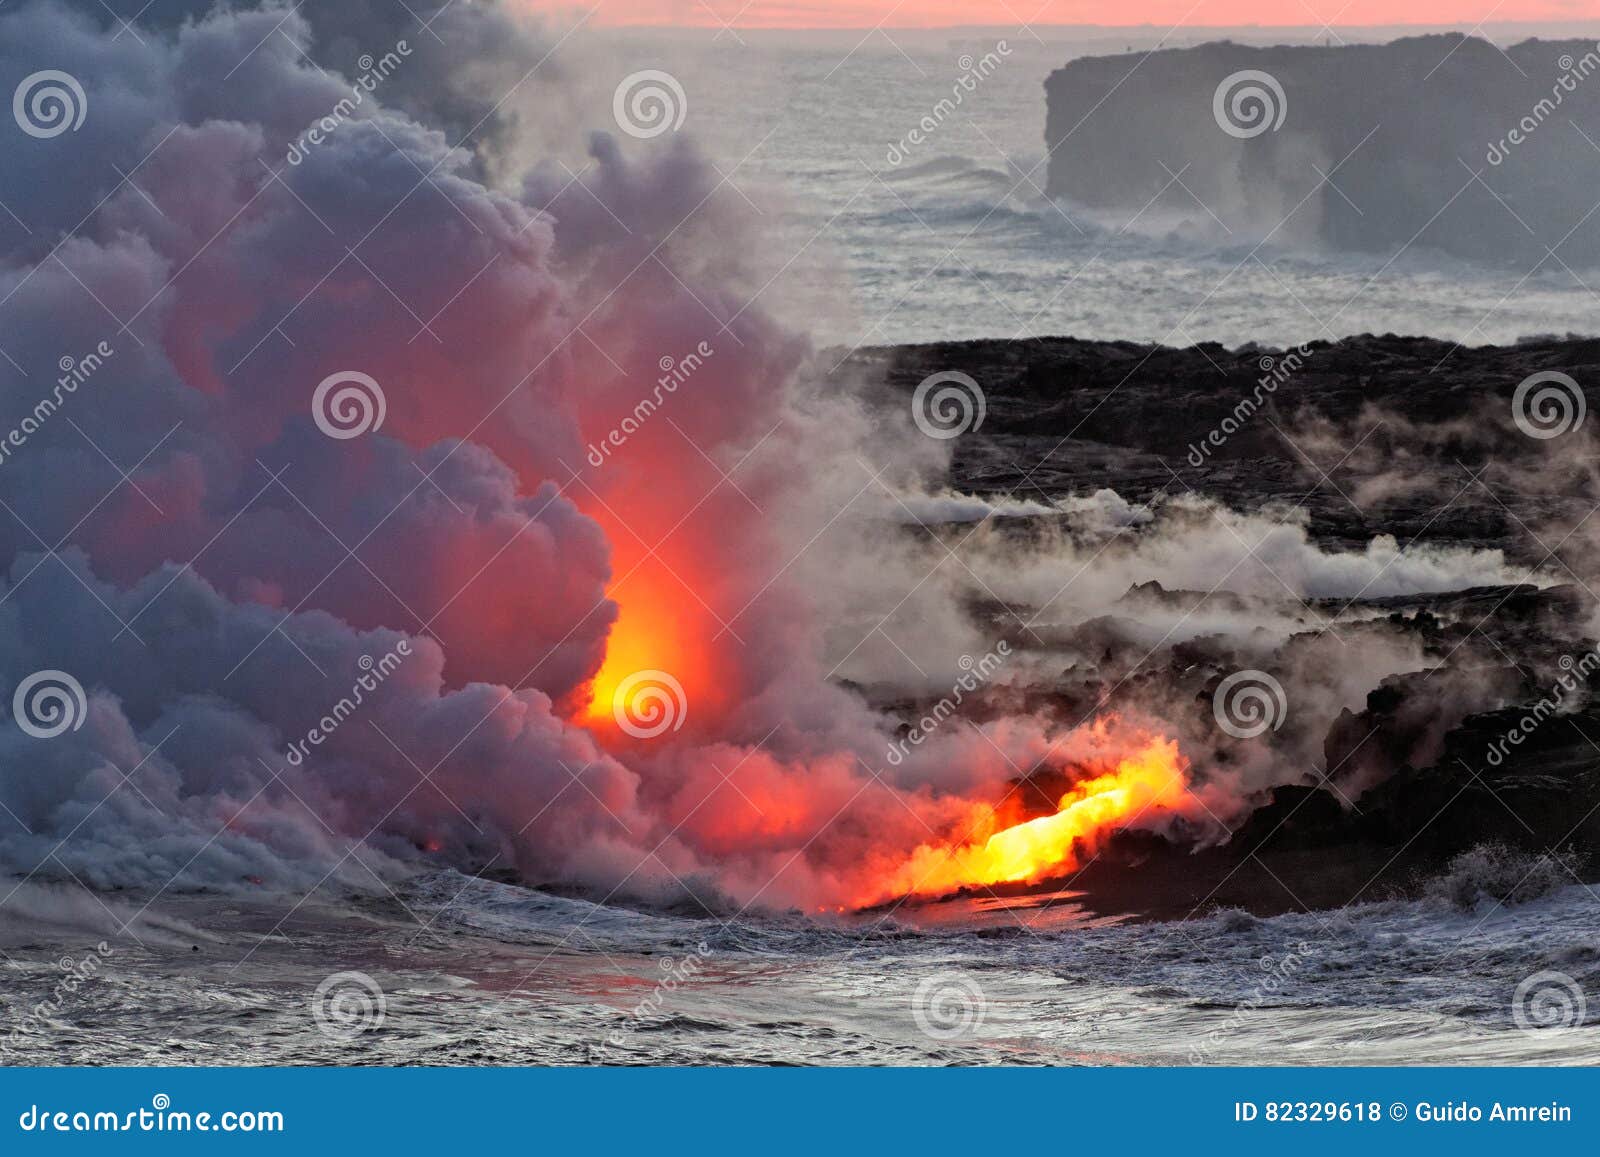 lava flowing into ocean - kilauea volcano, hawaii